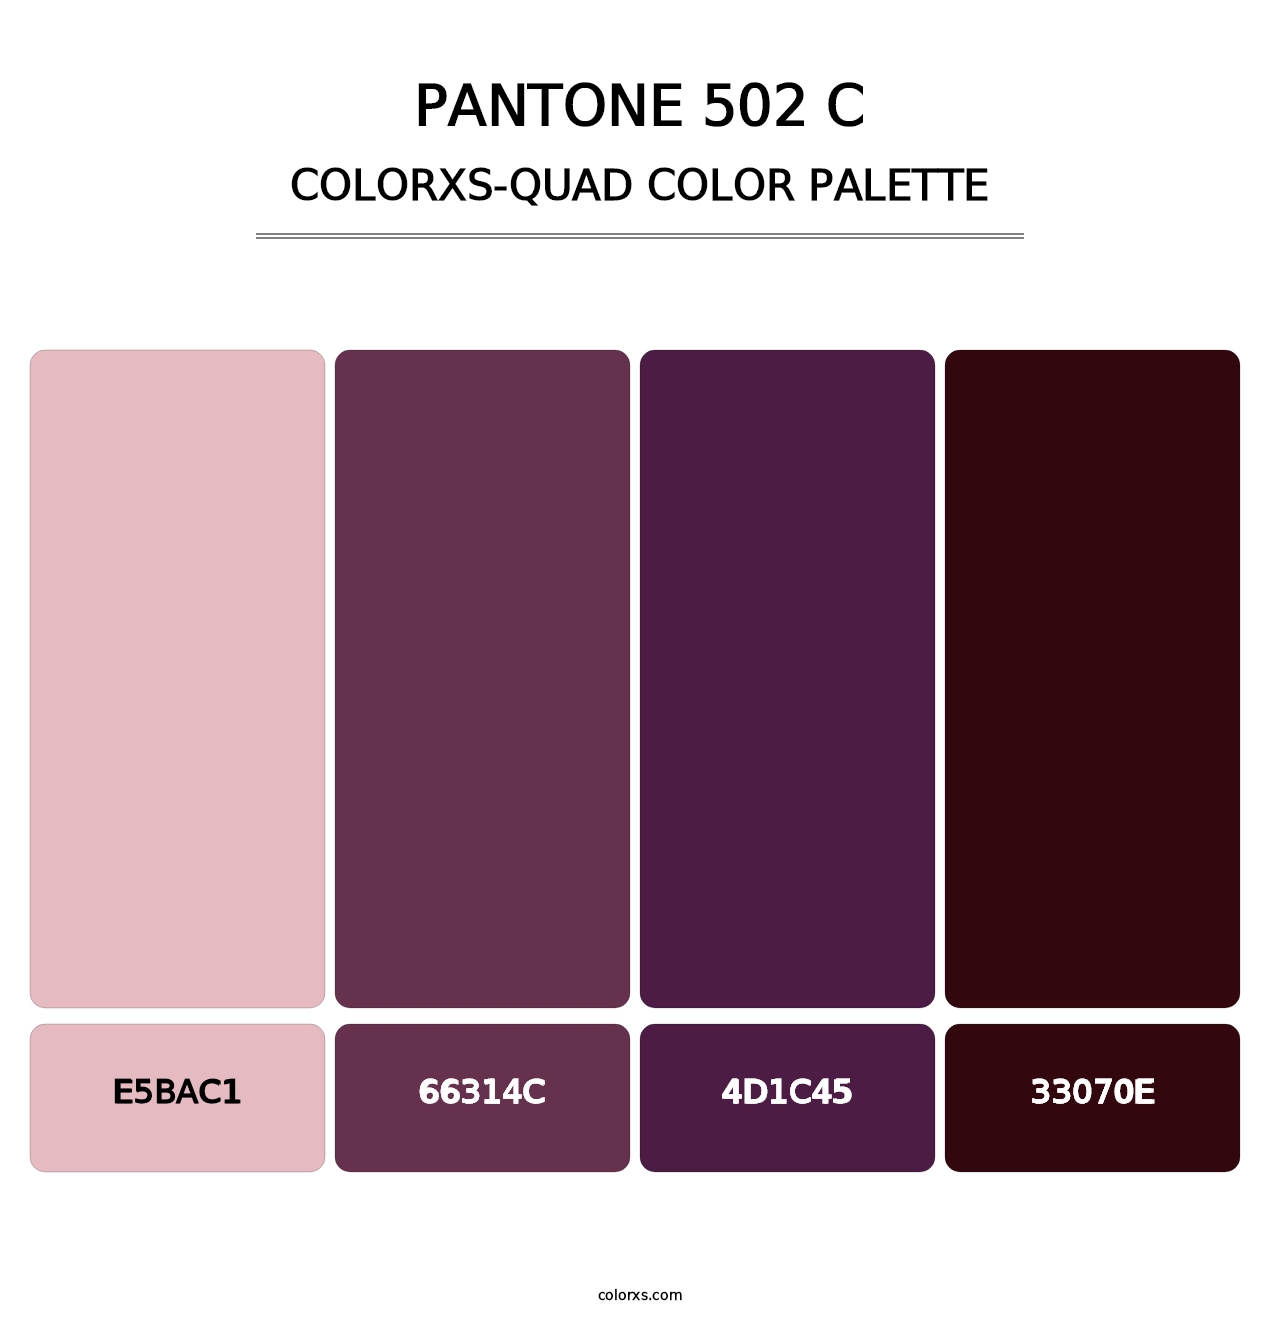 PANTONE 502 C - Colorxs Quad Palette